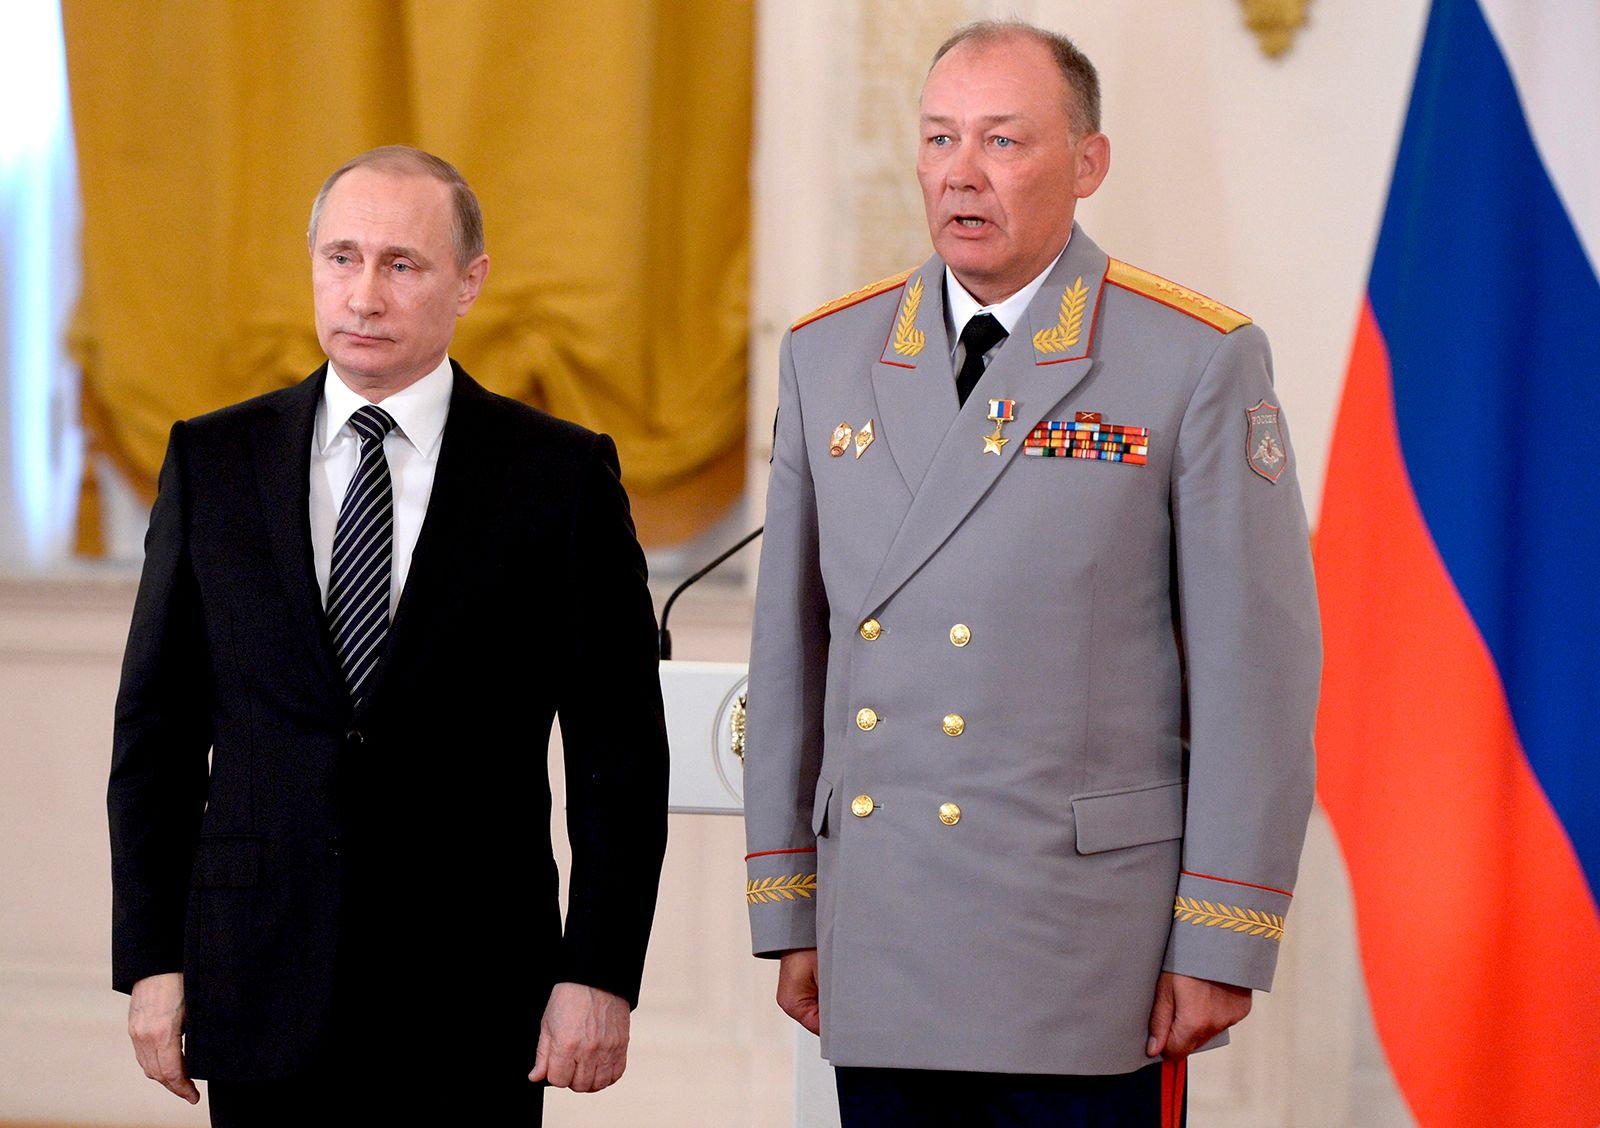 Belousov’s Unlikely Ascent in Putin’s War Machine